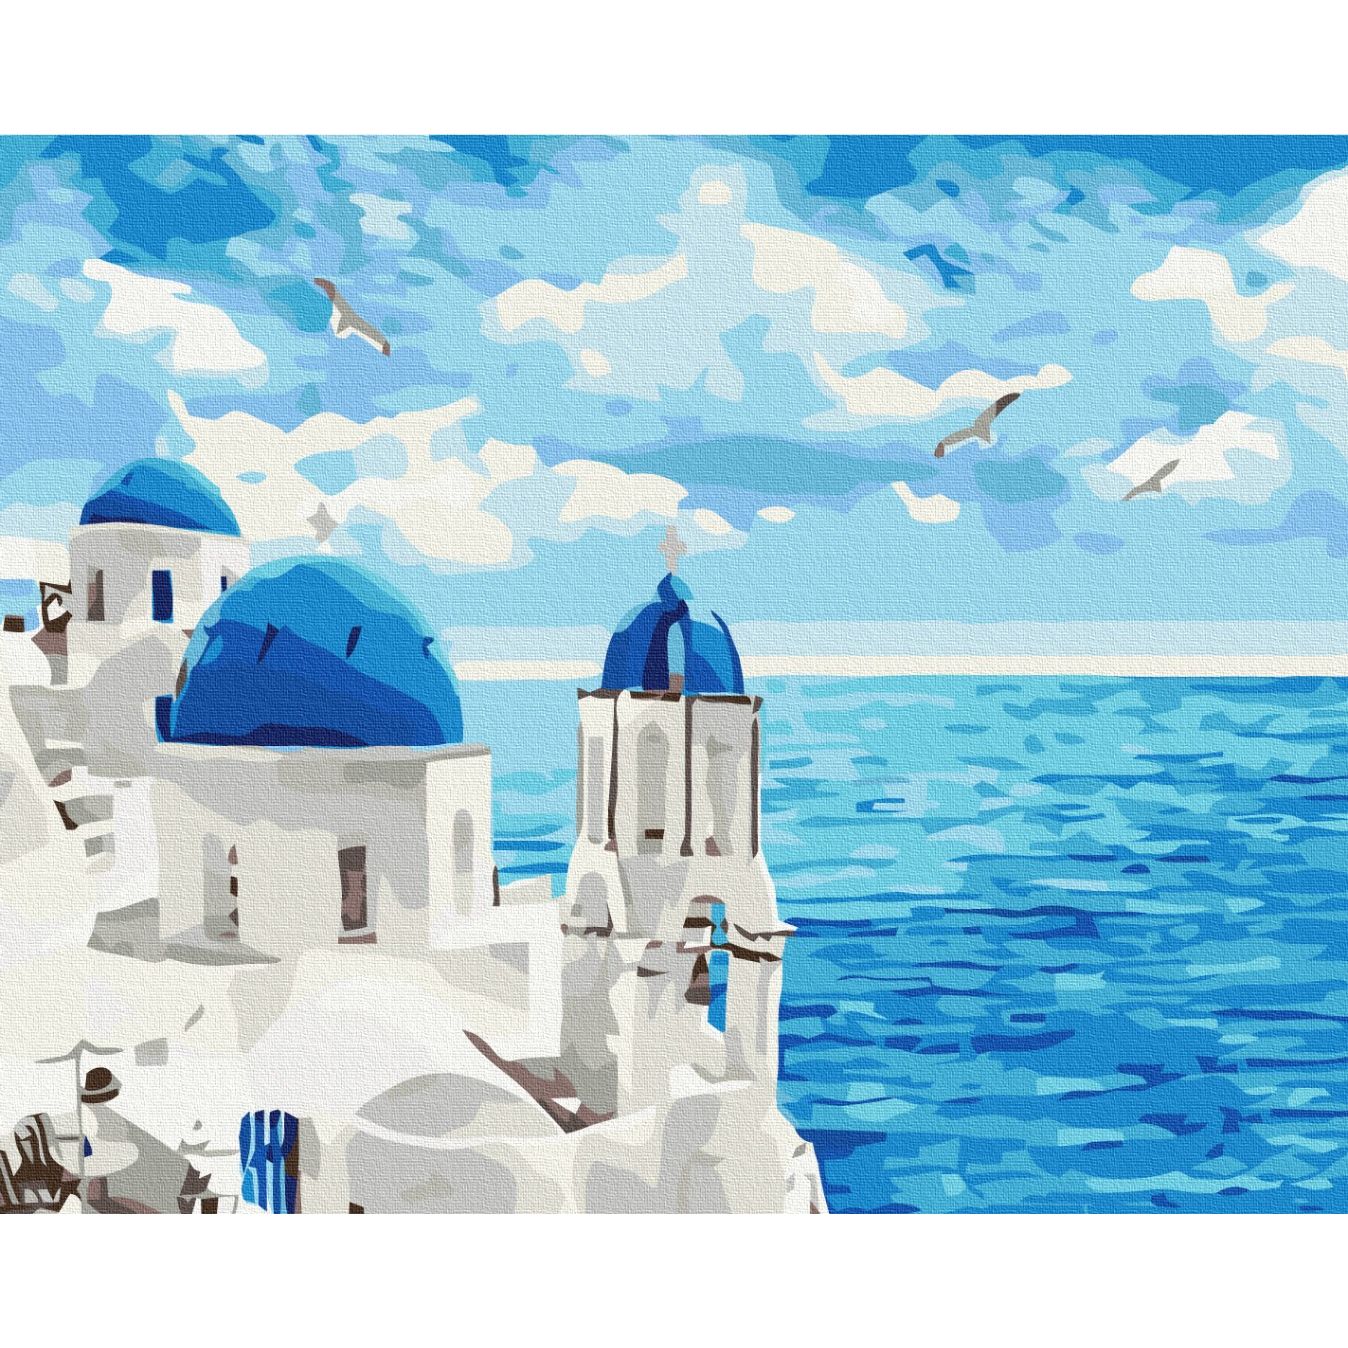 Картина по номерам Облака Санторини Brushme 40x50 см разноцветная 000277044 - фото 1